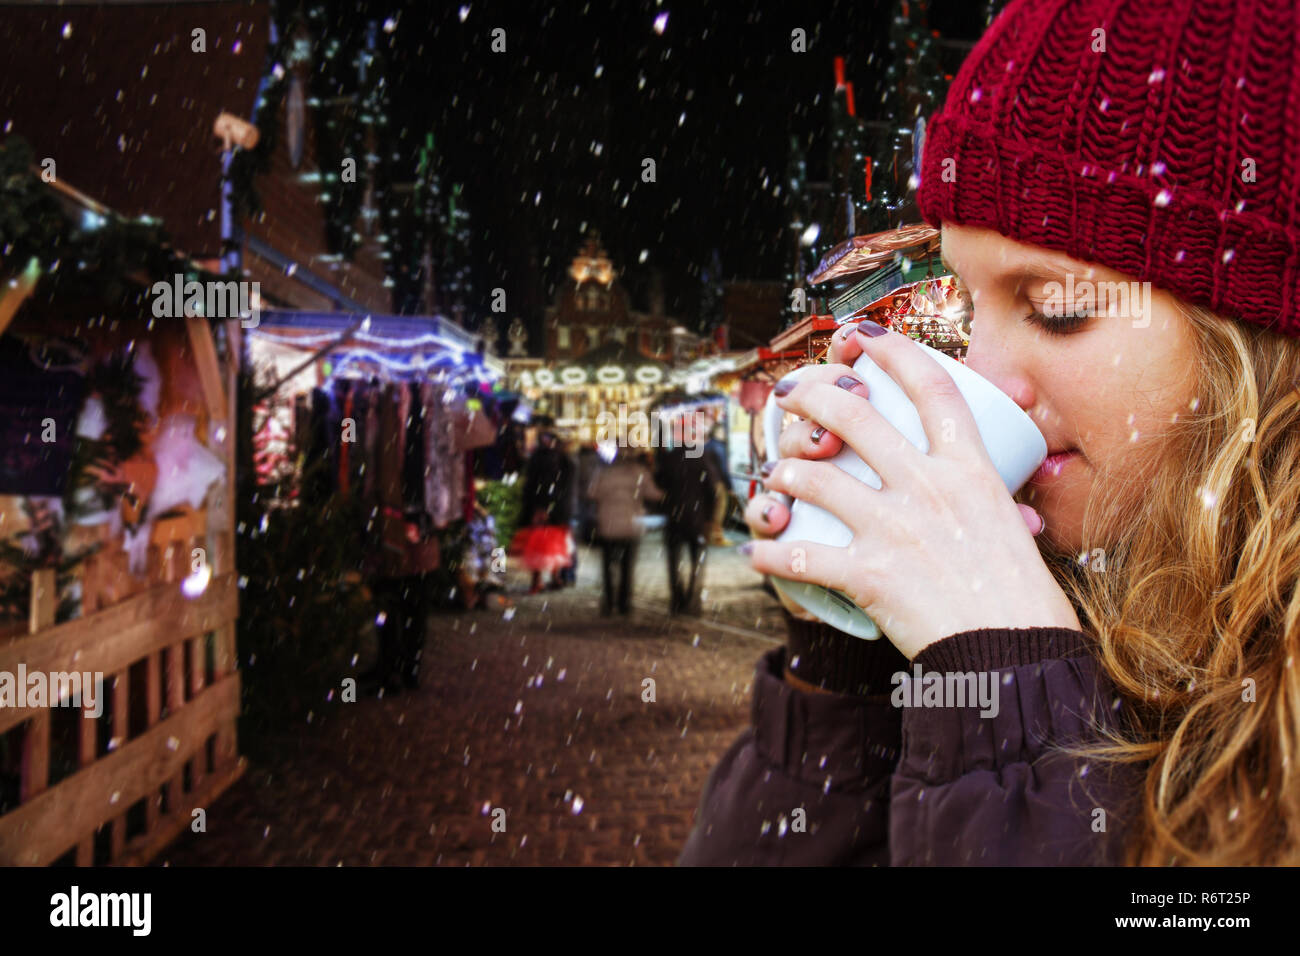 Jeune femme à boire une boisson chaude sur le marché de Noël Banque D'Images